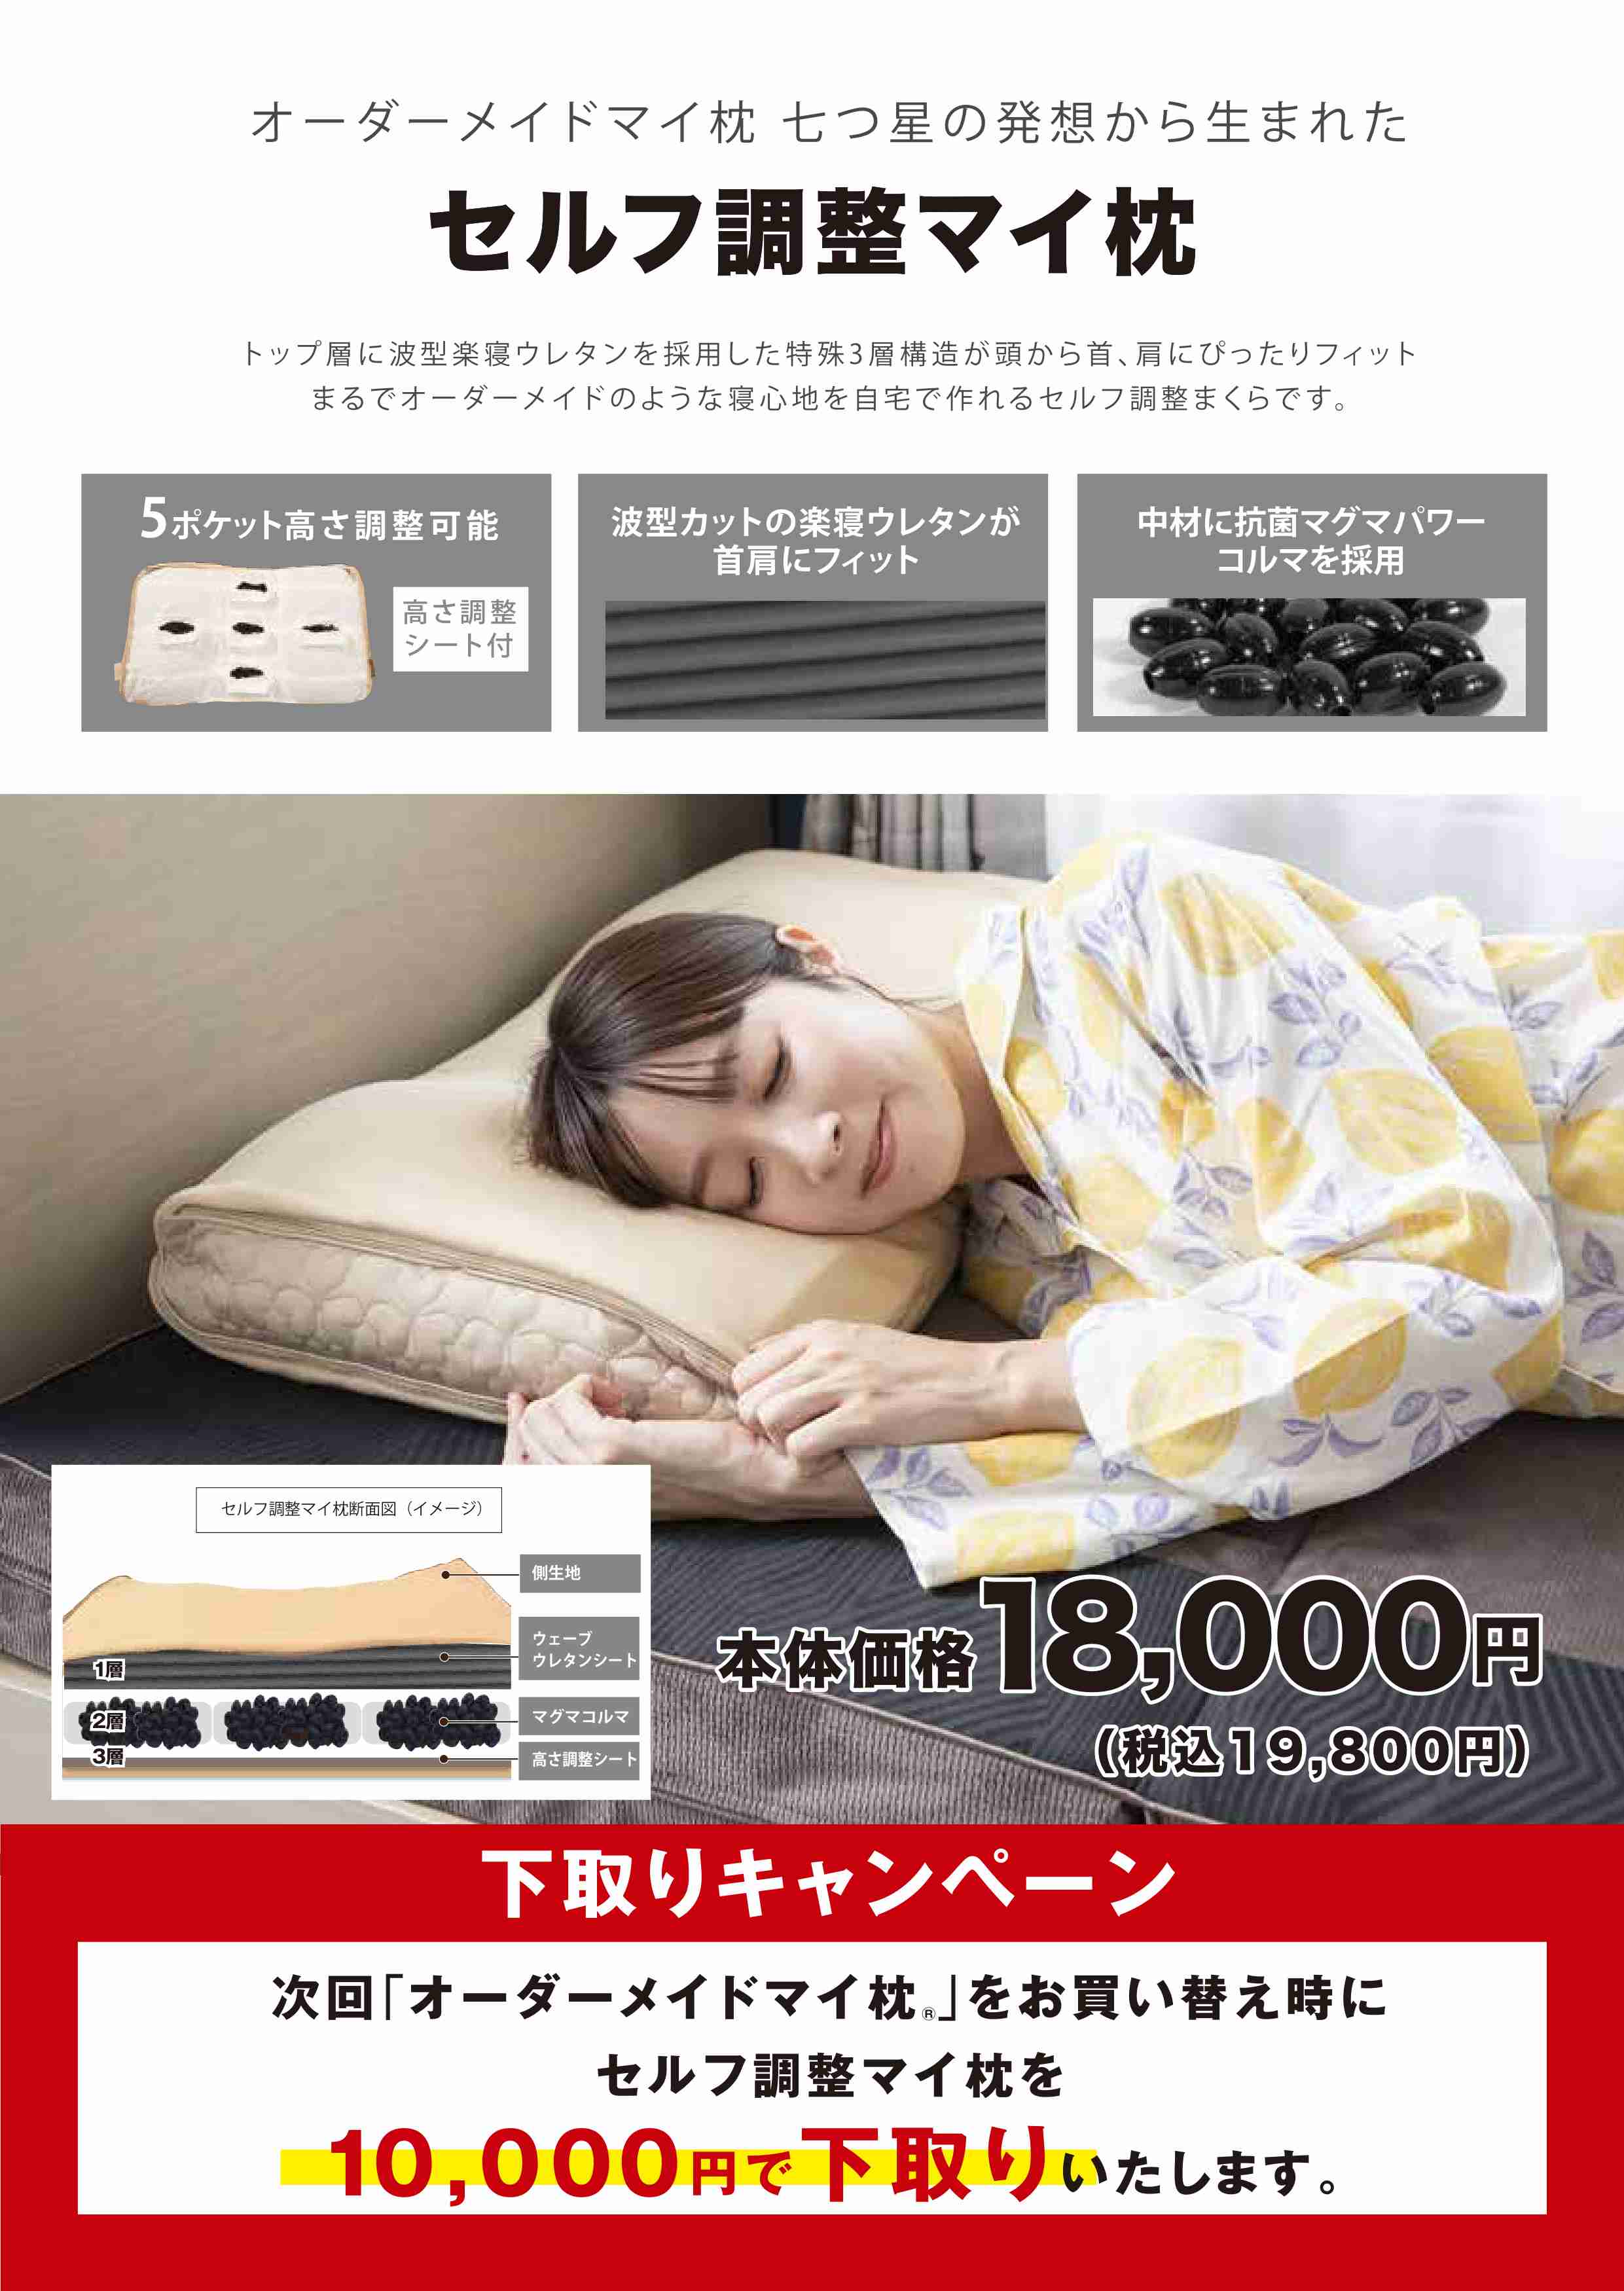 【新商品】セルフ調整マイ枕